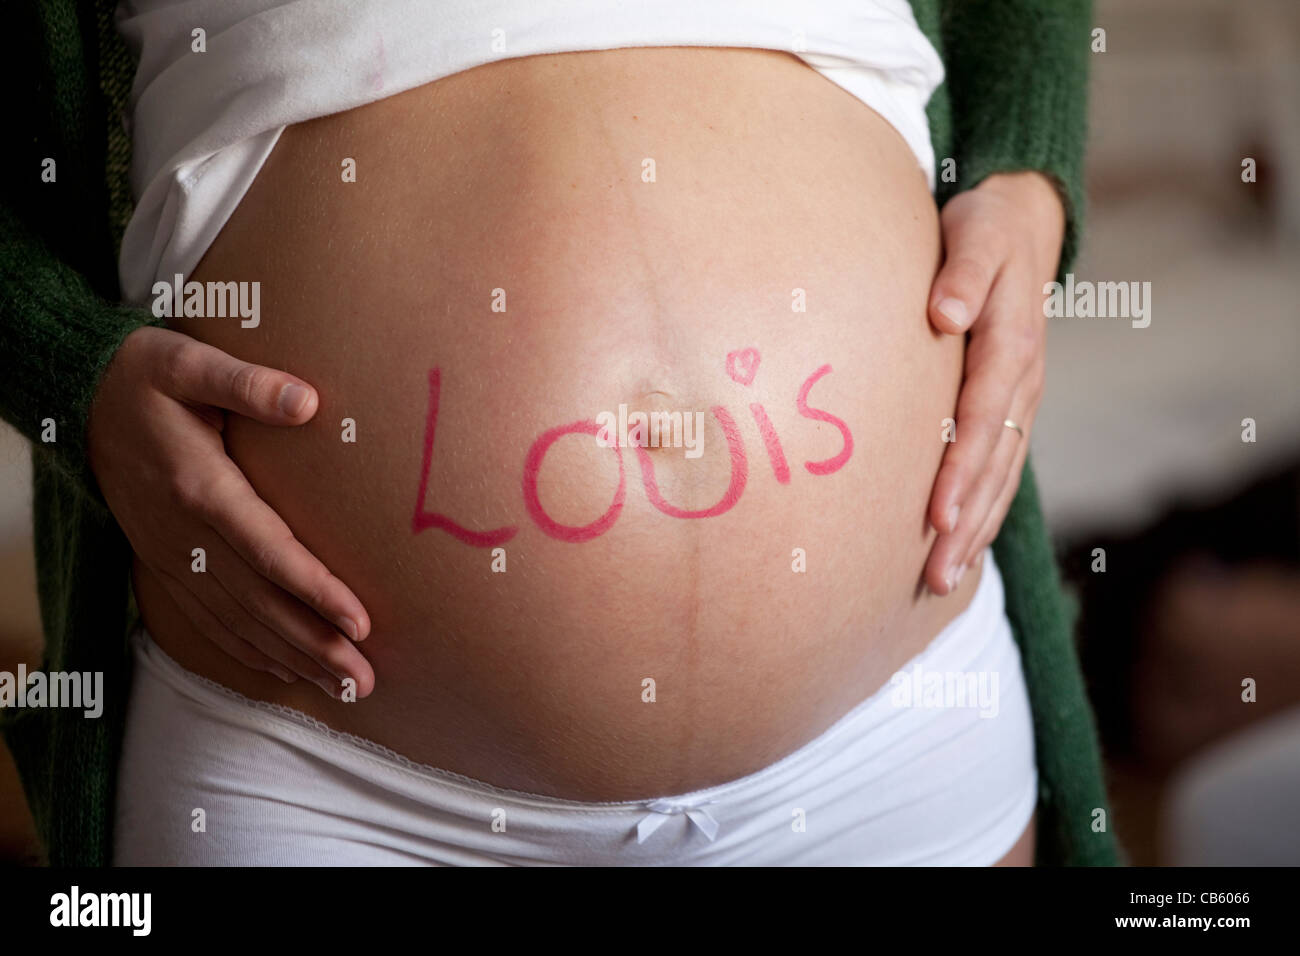 Hautnah auf dem Bauch einer schwangeren Frau mit dem Namen Louis darauf geschrieben. Stockfoto